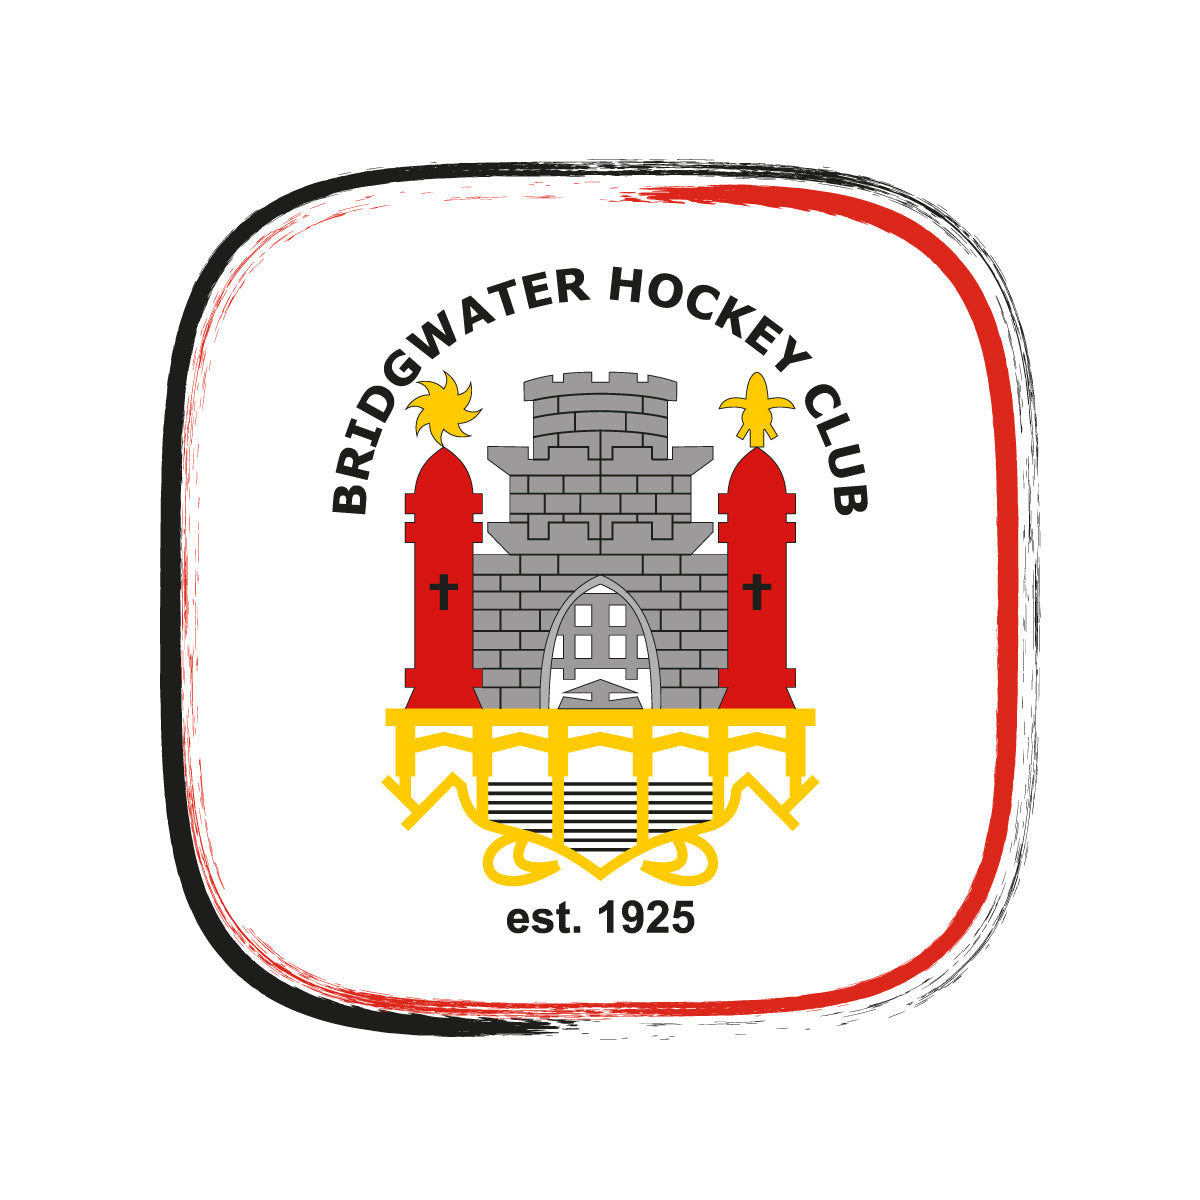 Bridgwater Hockey Club